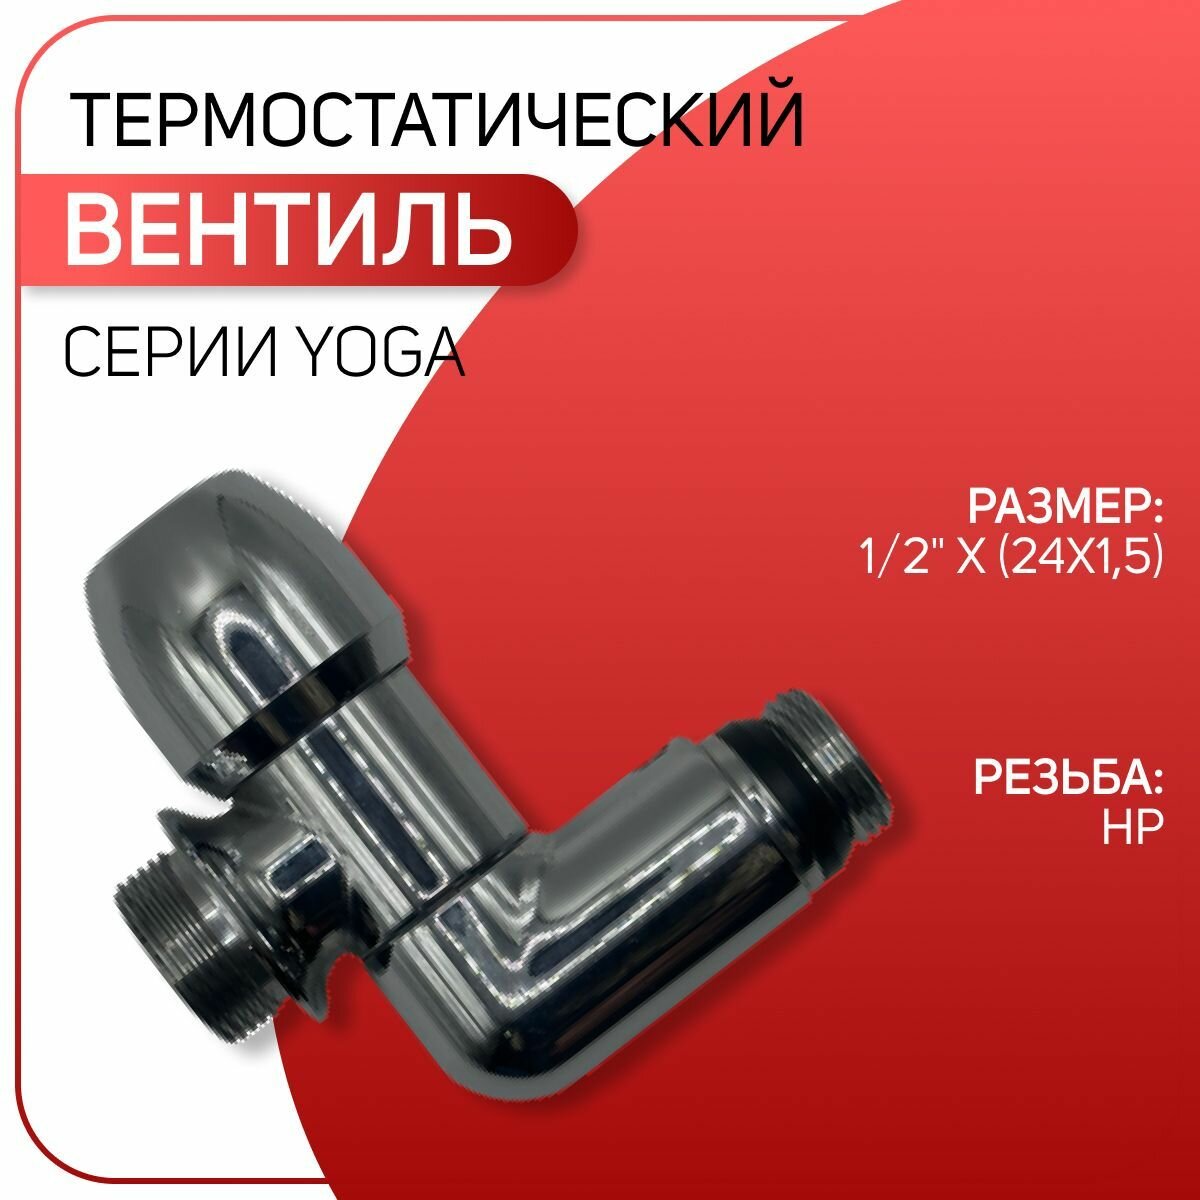 Вентиль терморегулирующий серии YOGA, для полотенцесушителя, хромированный, ICMA, арт. 928, 1/2" х (24х1,5)